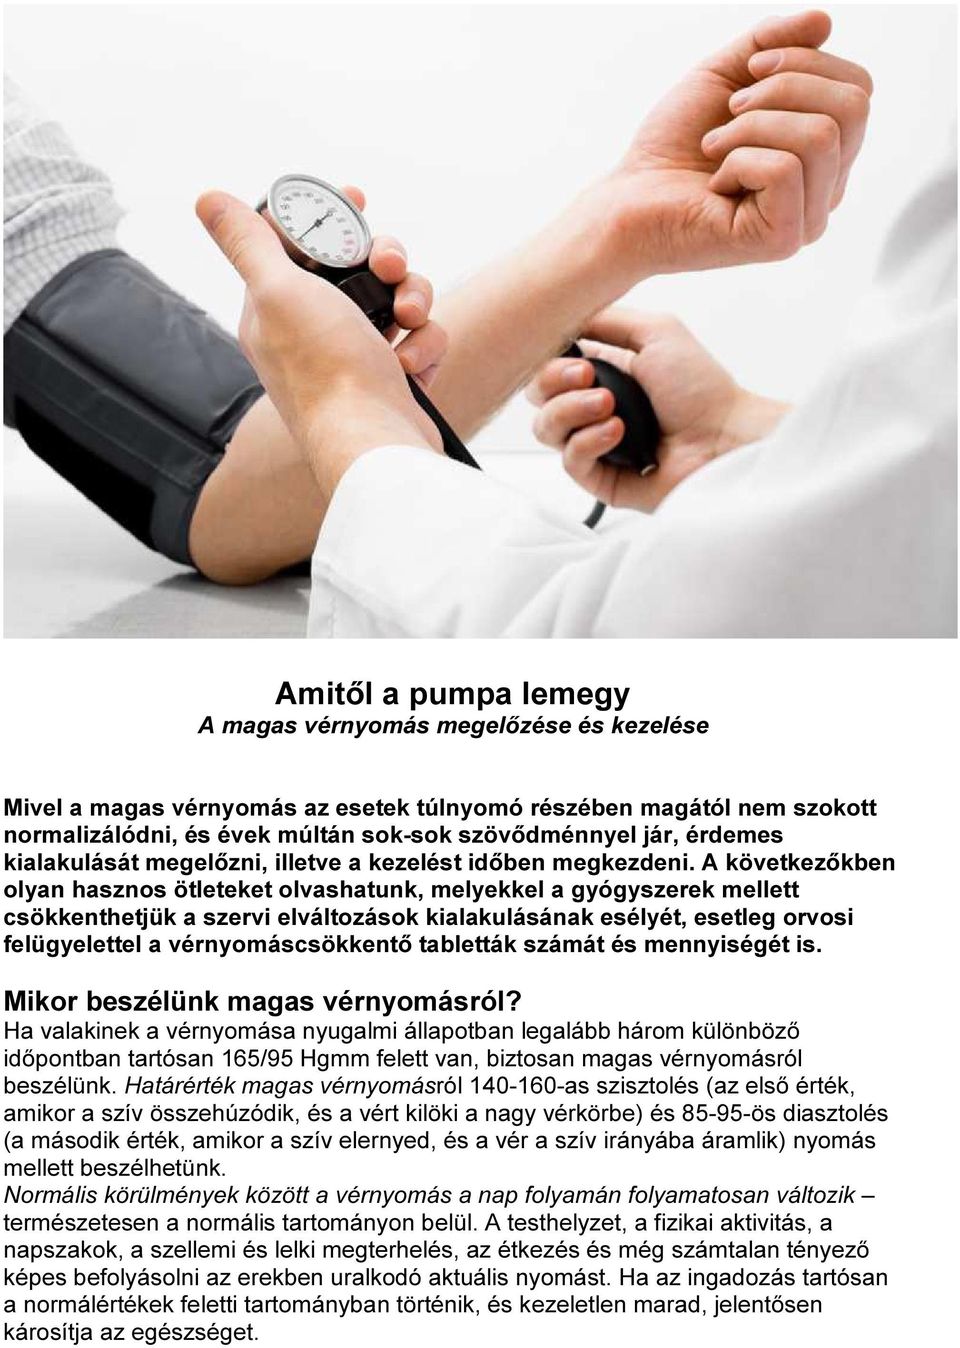 a magas vérnyomás fizikai aktivitással történő kezelése a magas vérnyomás szó szerinti kezelése